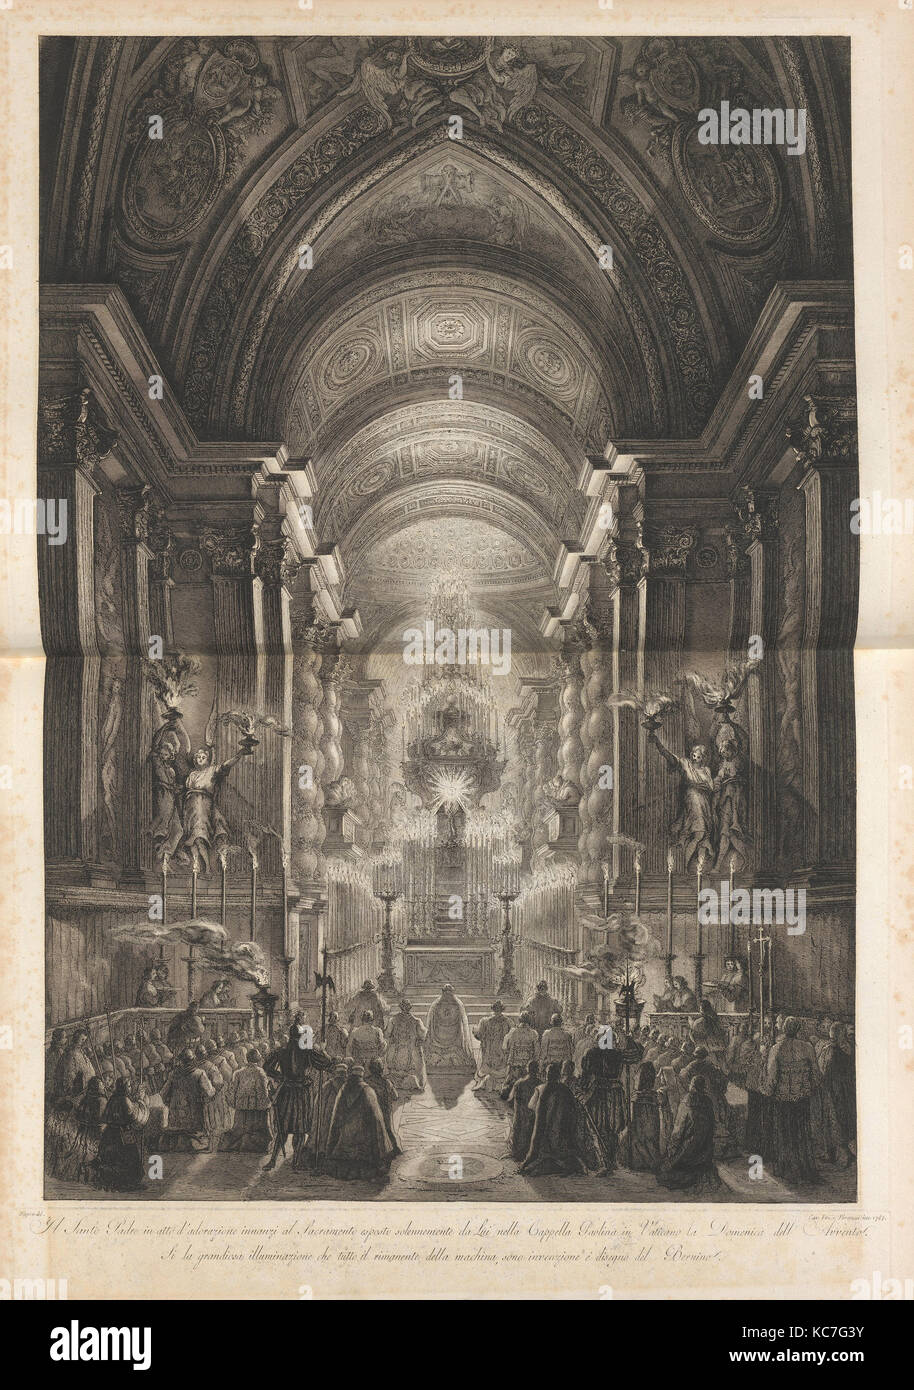 Cerimonia di premiazione che si terrà nella Cappella Paolina, Vaticano, Francesco Piranesi, 1787 Foto Stock